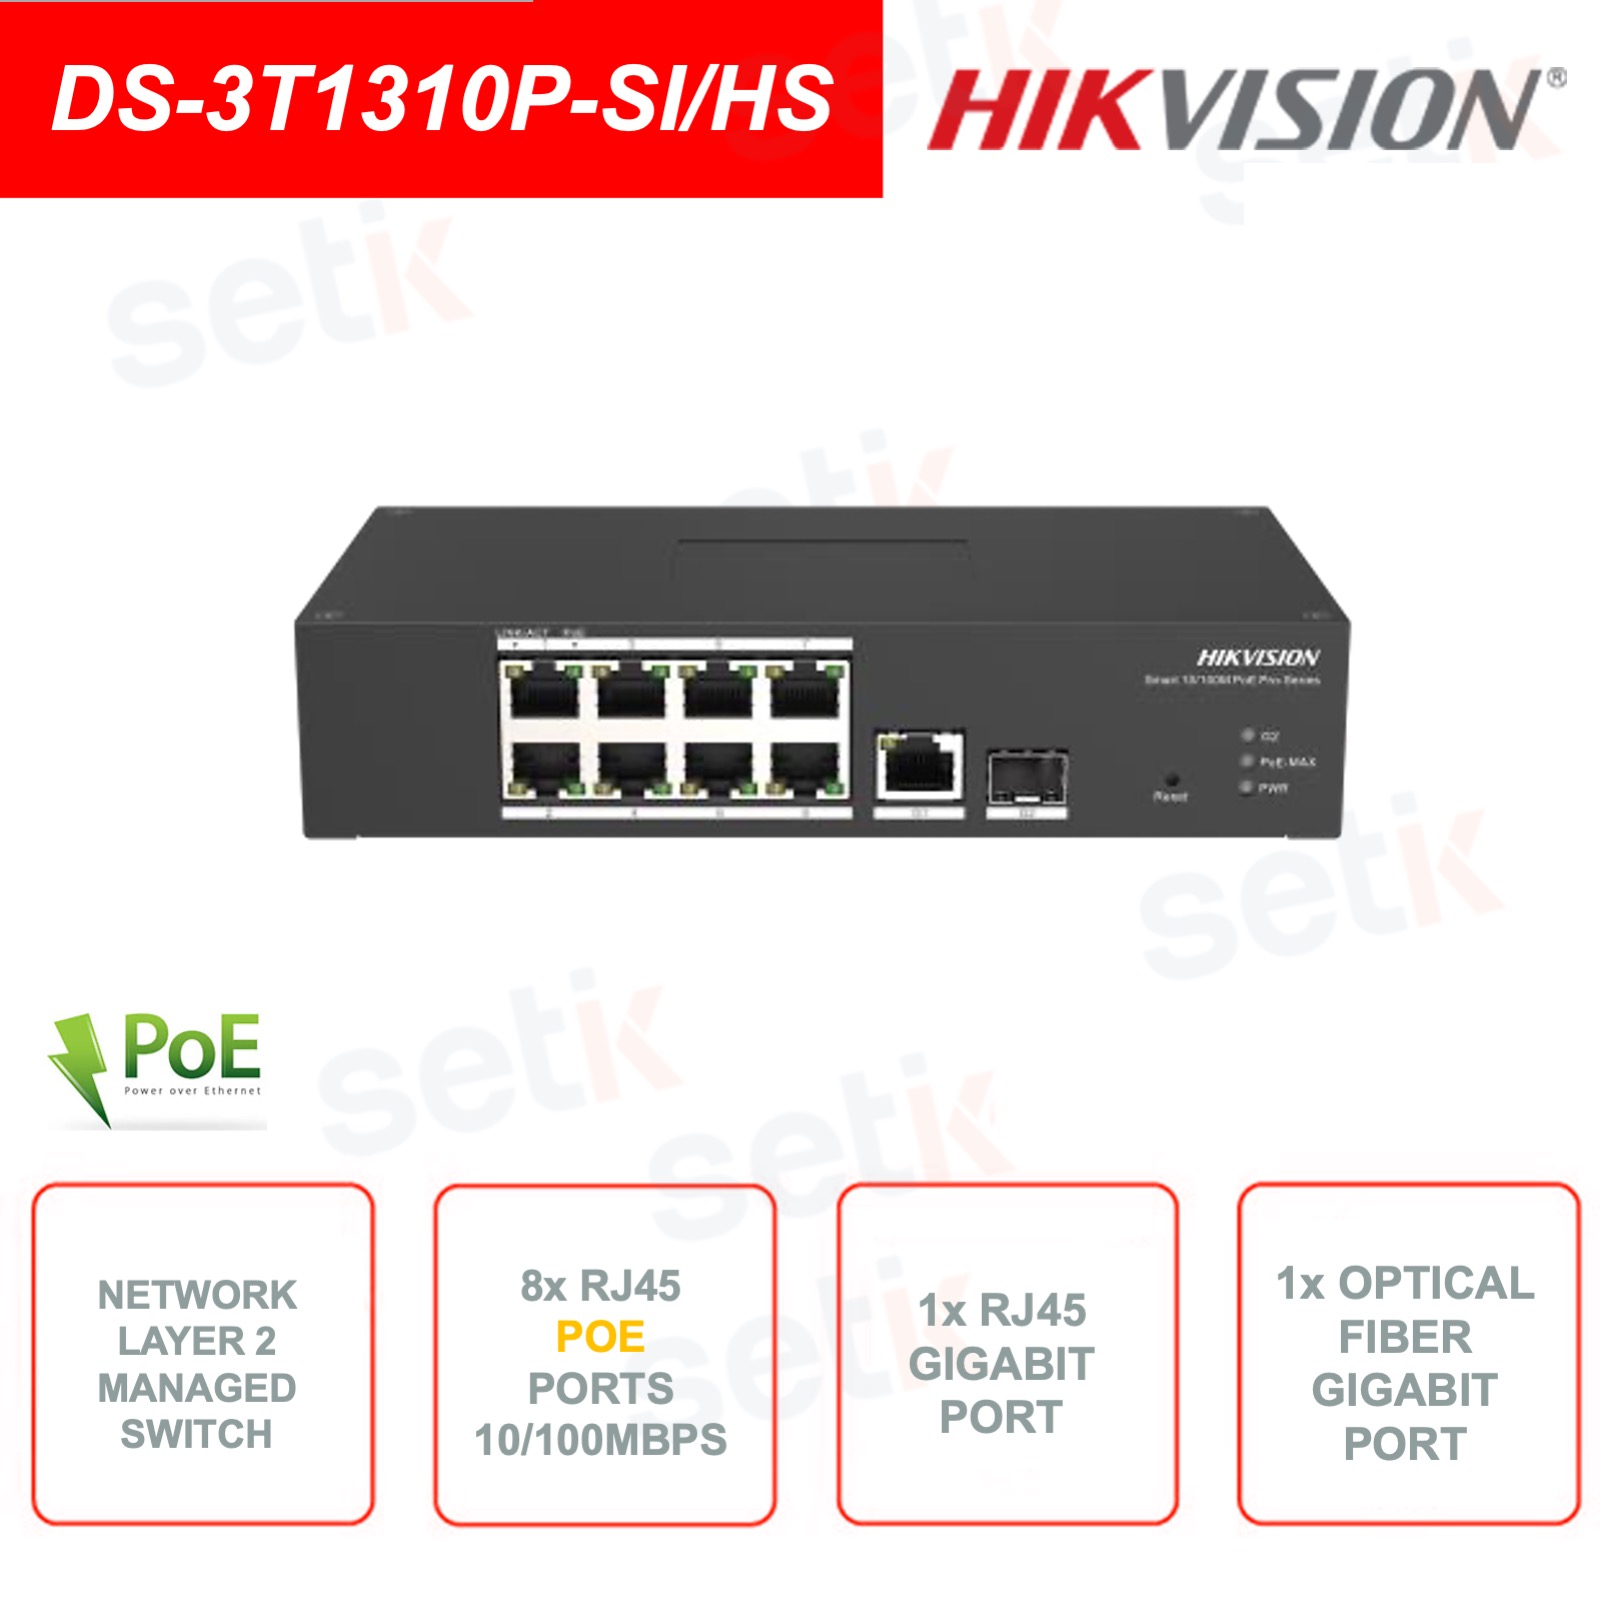 DS-3T1310P-SI/HS - Commutateur réseau - 8 ports PoE RJ45 - 1 port RJ45  Gigabit - 1 port fibre optique Gigabit 